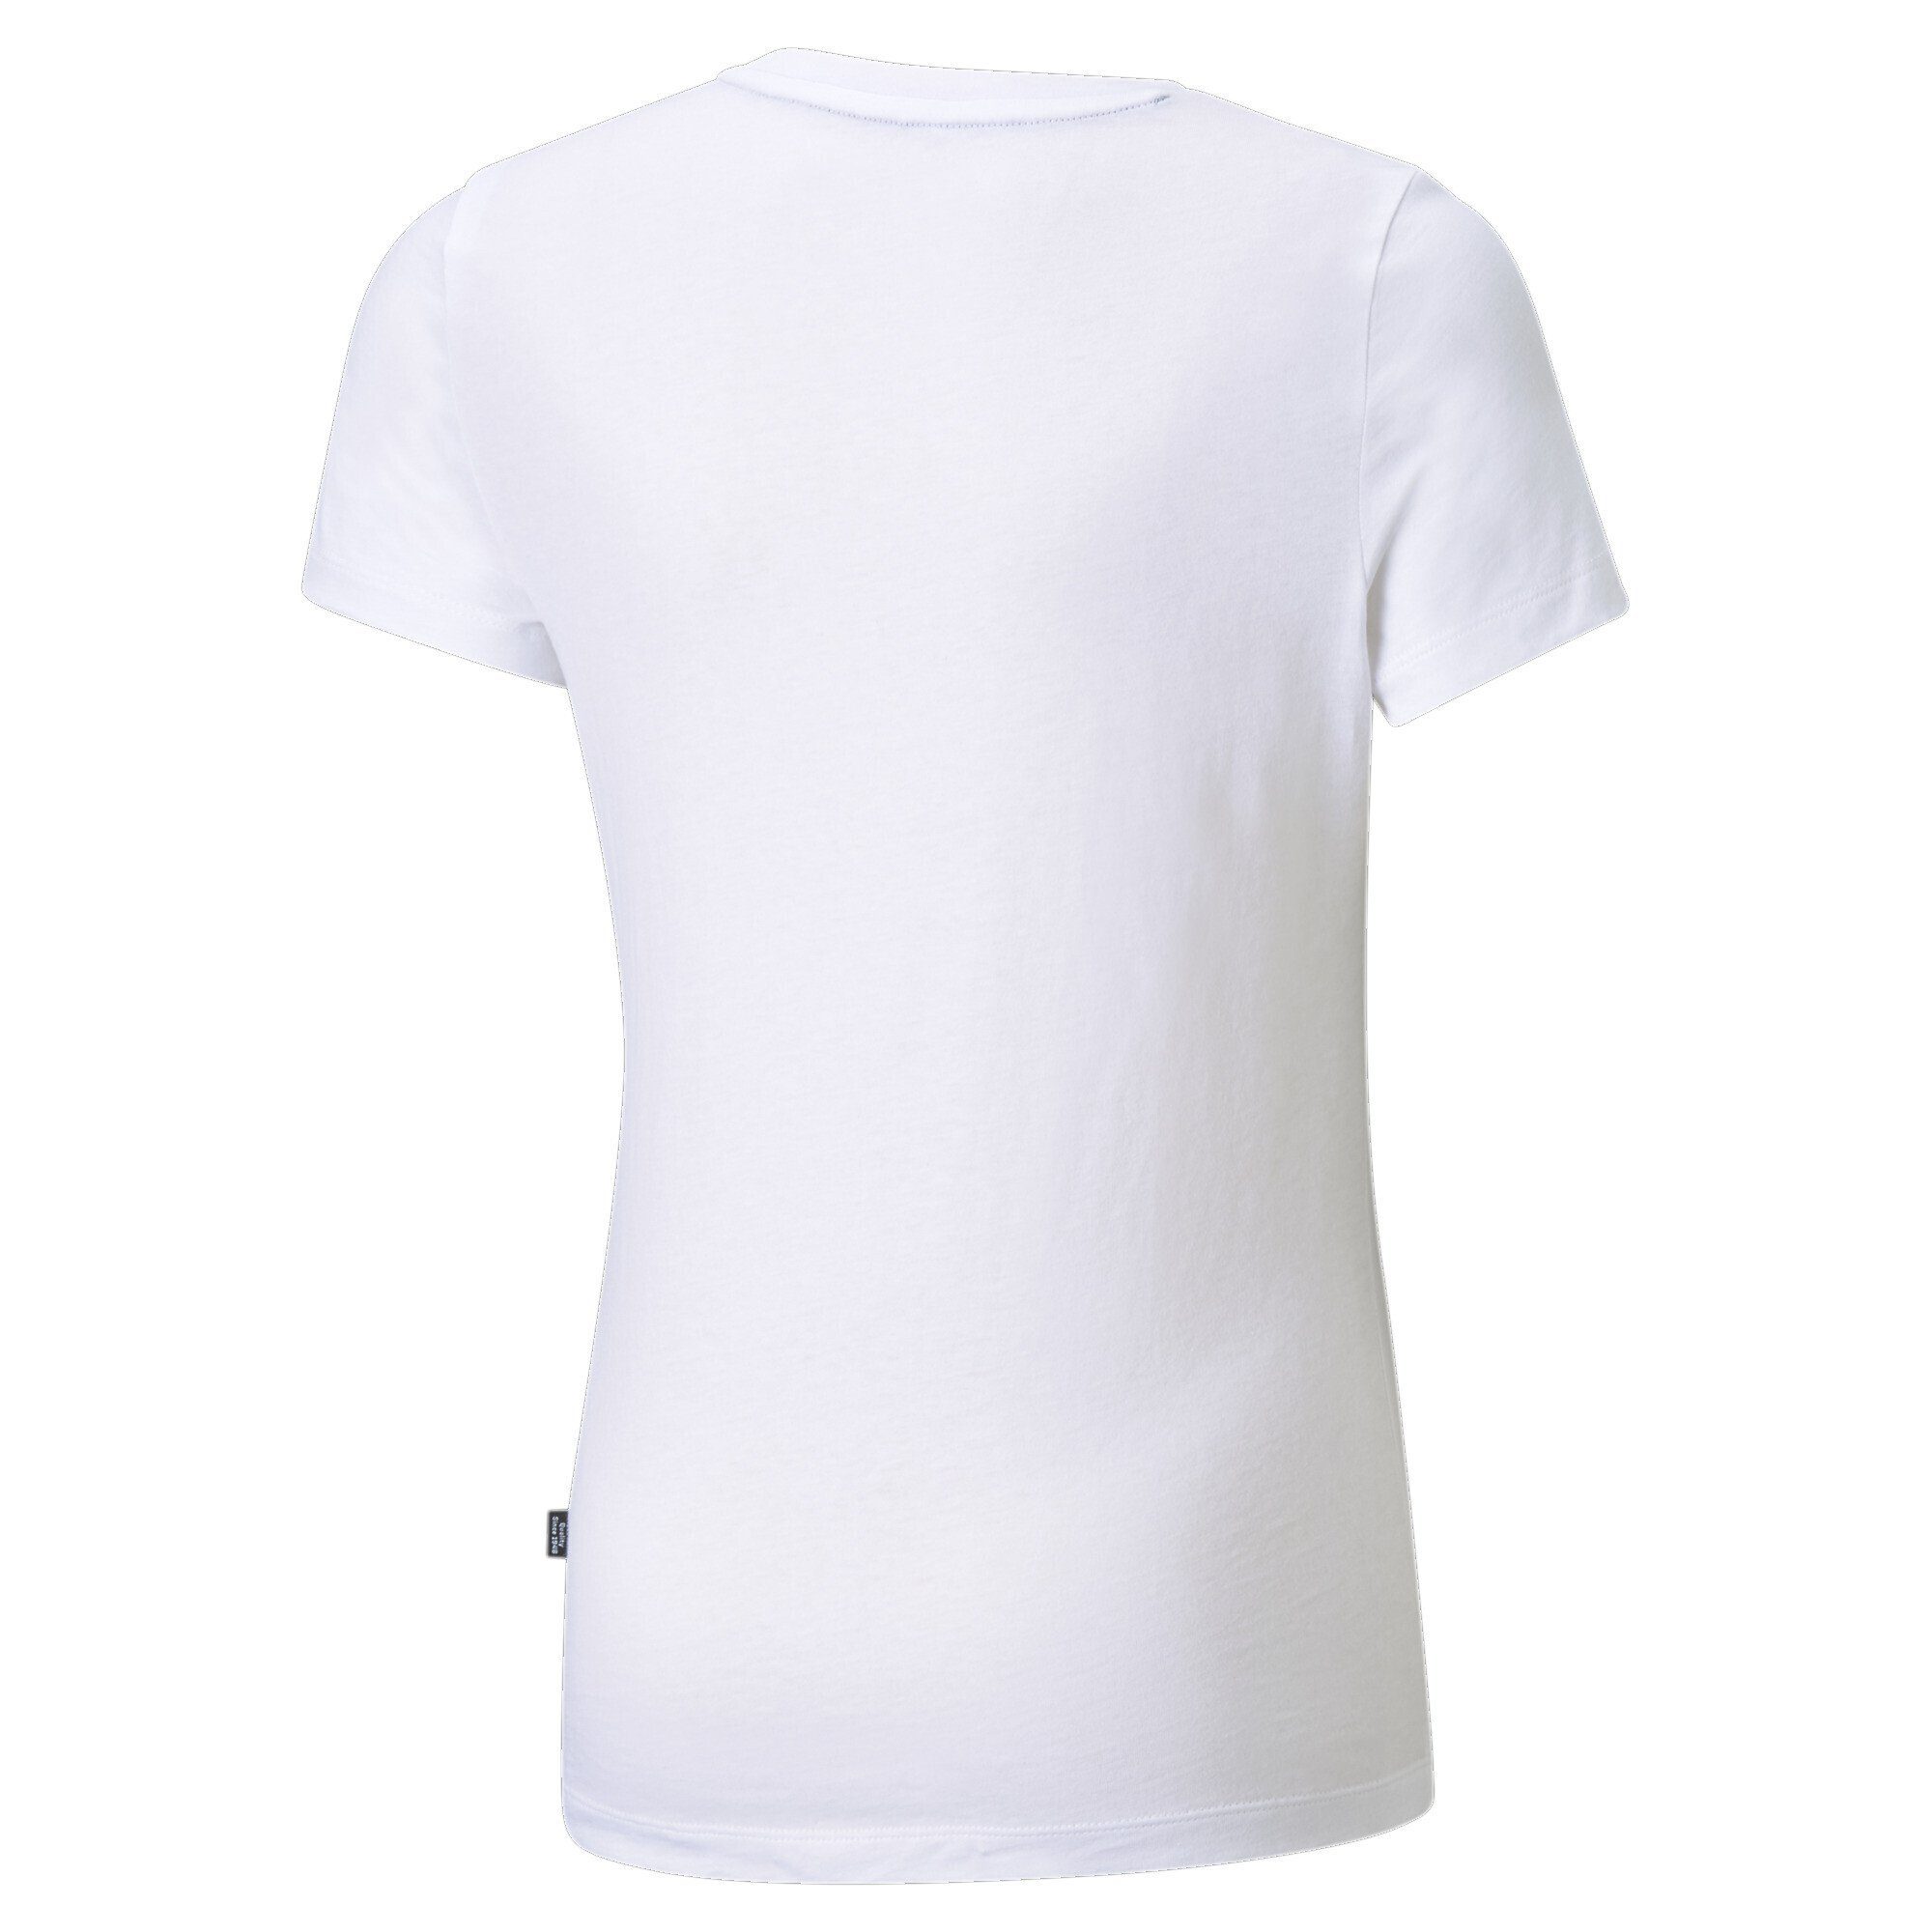 PUMA T-Shirt Logo mit Essentials Mädchen T-Shirt White